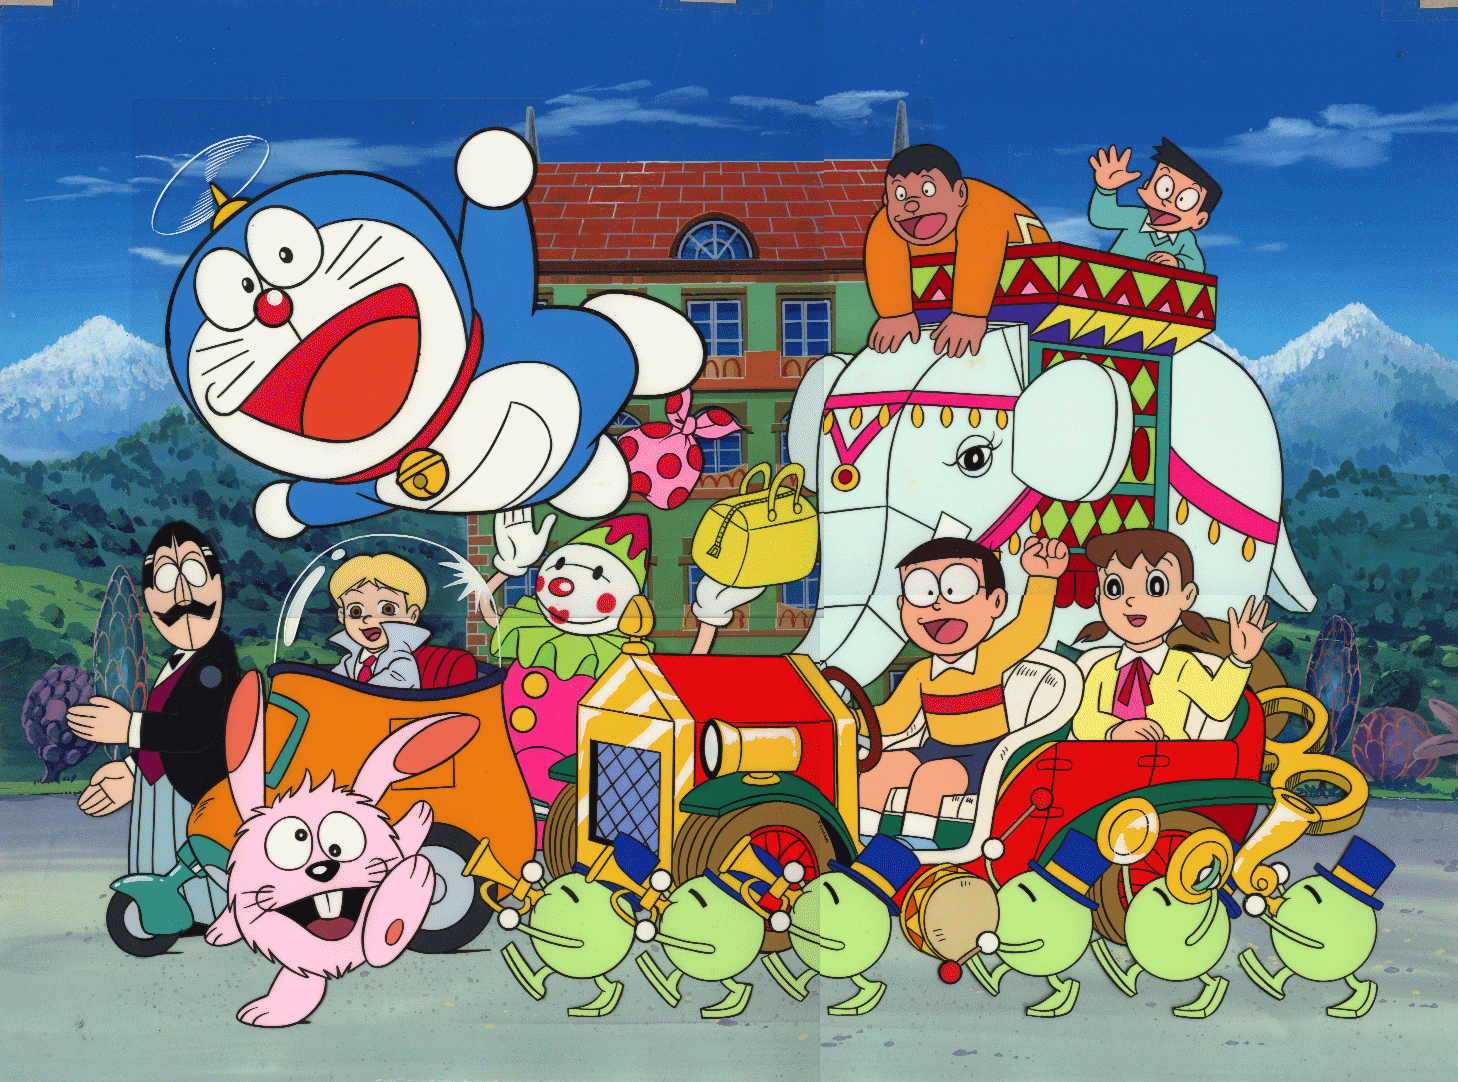 Esta Imagen Tiene El Nombre De Doraemon Cartoon Wallpaper Gracias Por